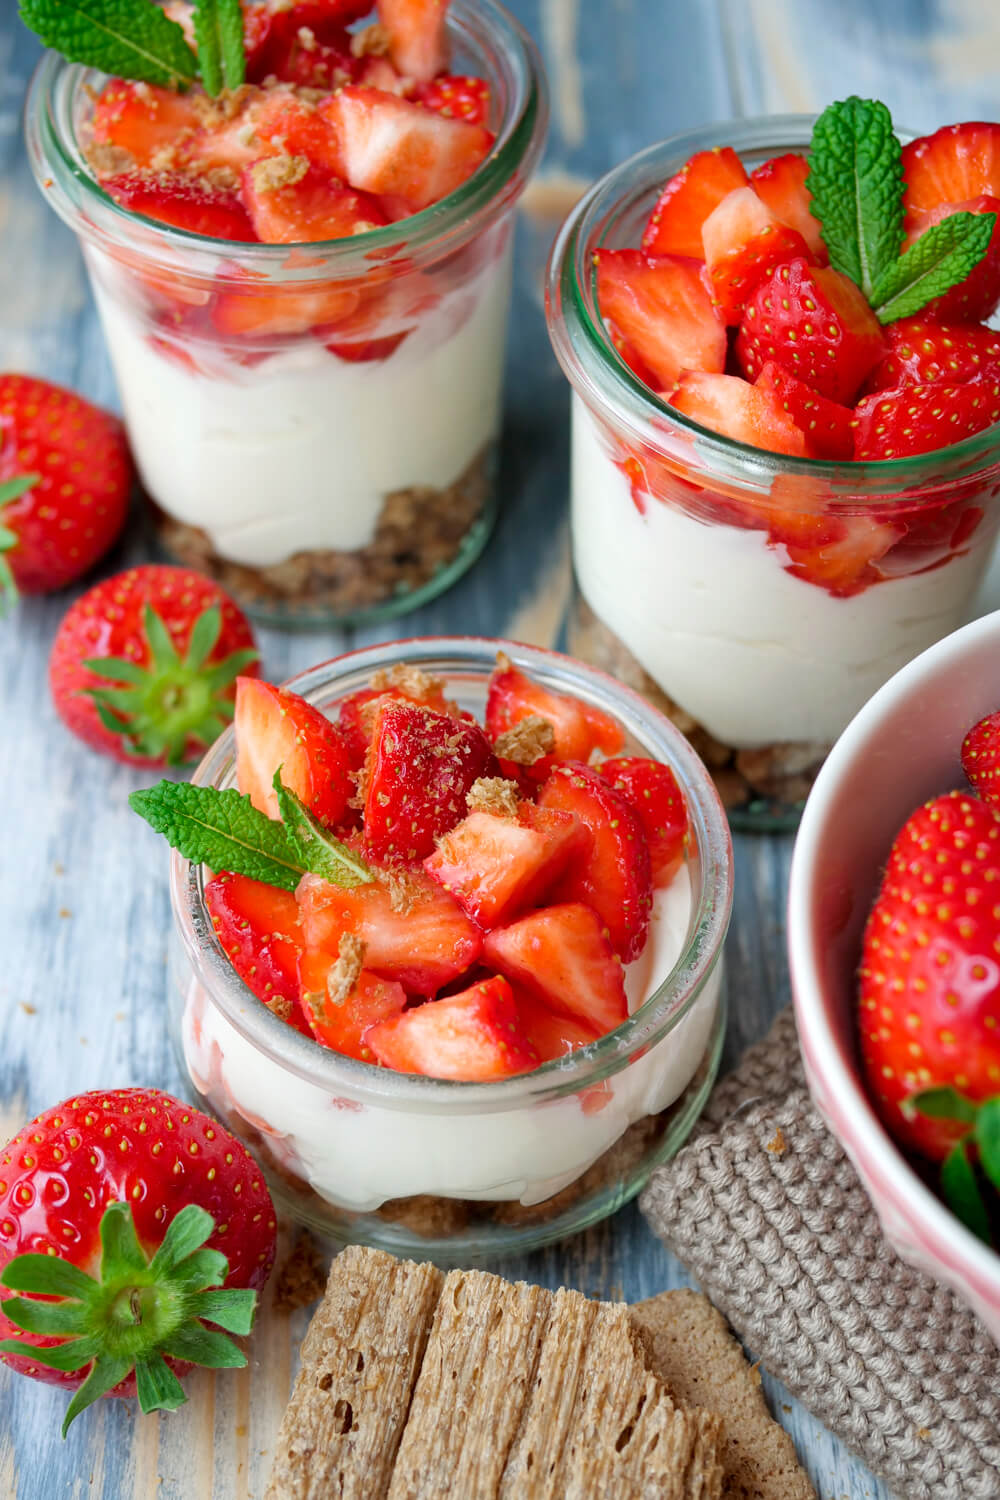 Schnelles Erdbeer-Dessert mit Frischkäse, Joghurt, Erdbeeren und Minze im Glas